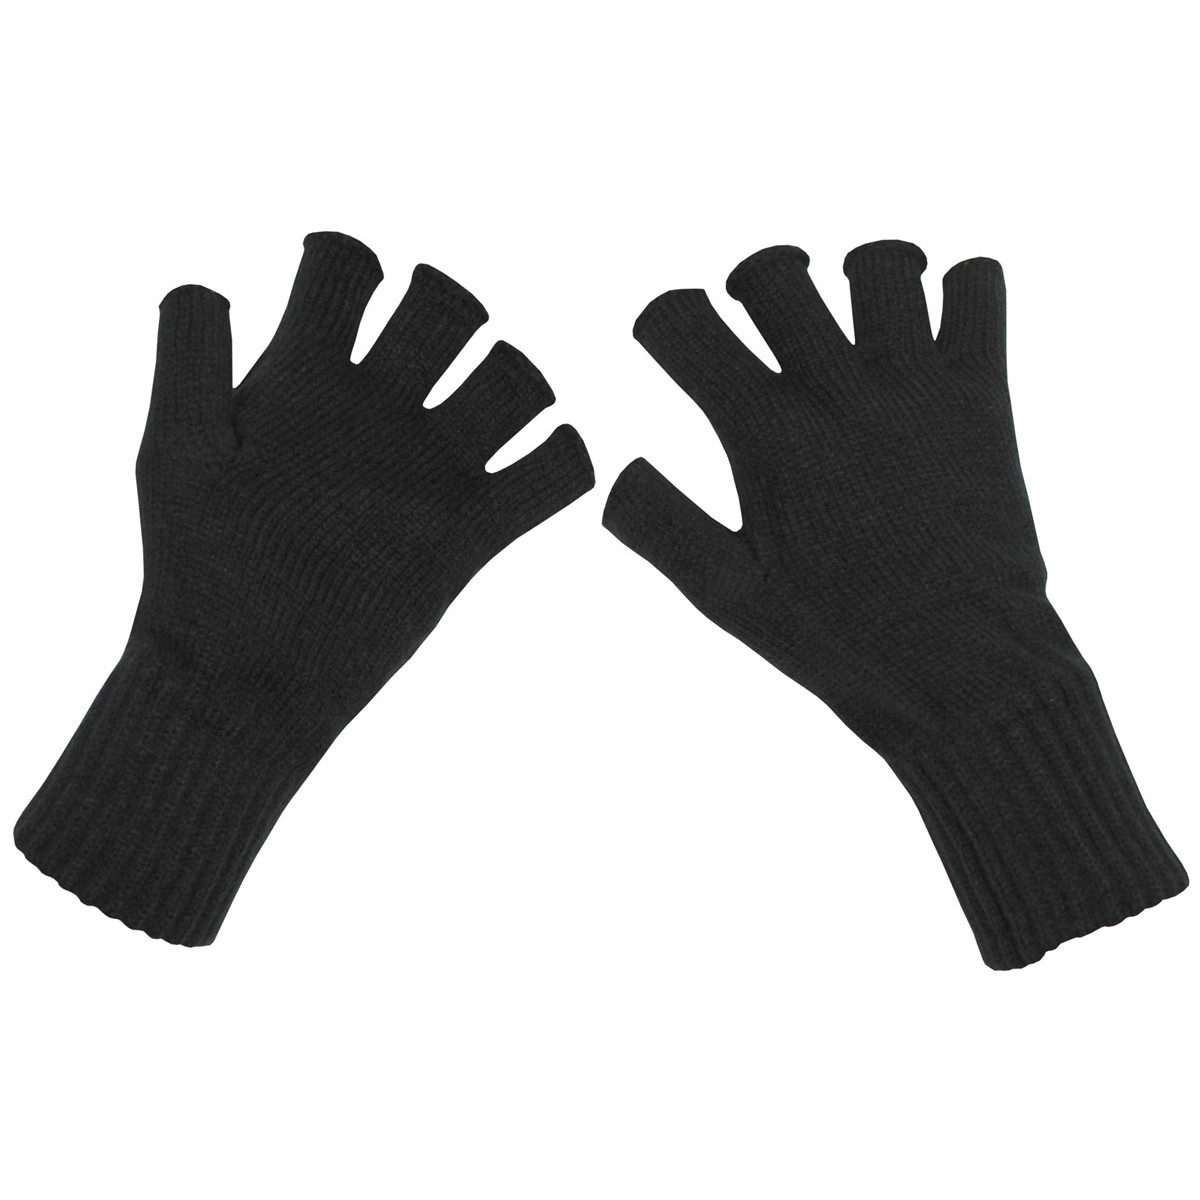 Rukavice pletené bezprsté MFH - černé, XL